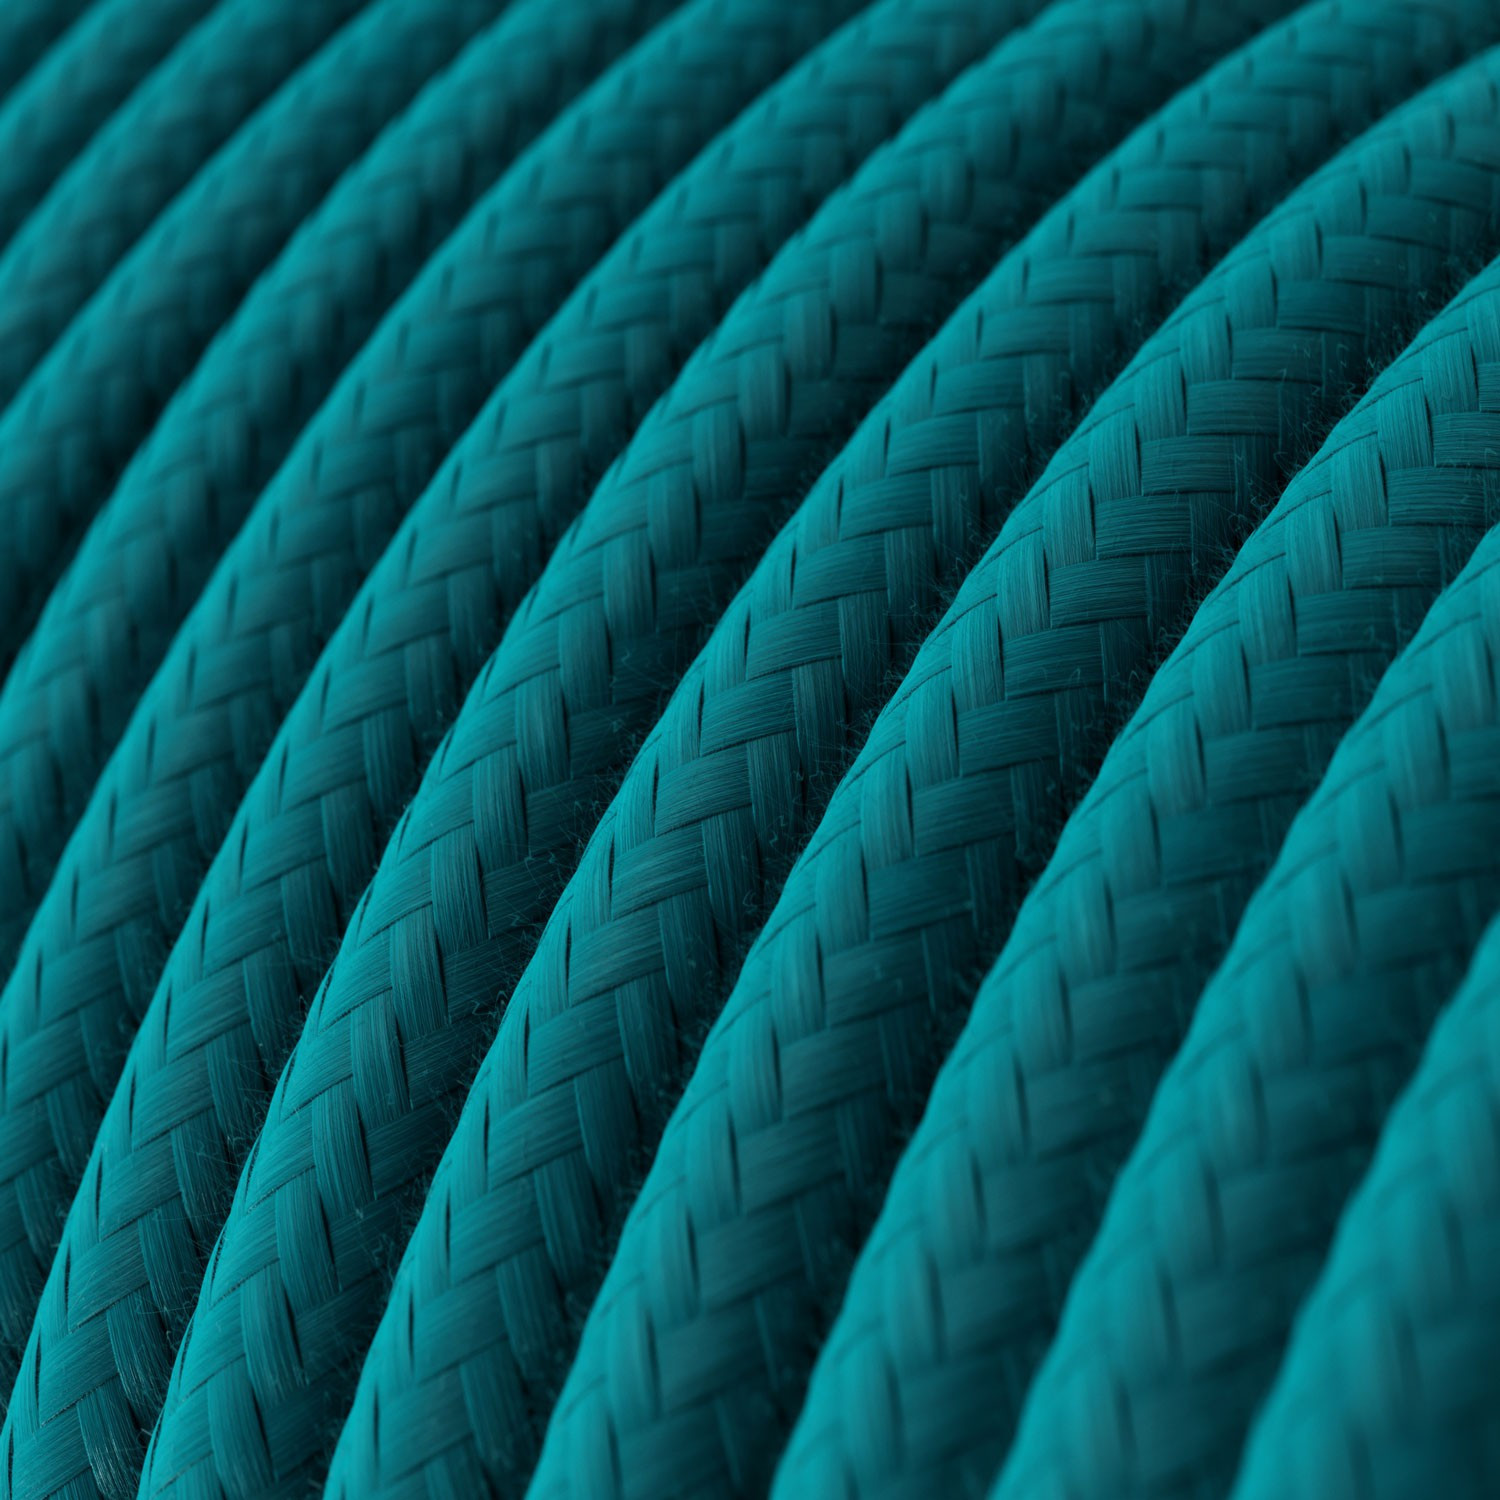 Cavo tessile Ceruleo in cotone - L'Originale Creative-Cables - RC21 rotondo 2x0,75mm / 3x0,75mm